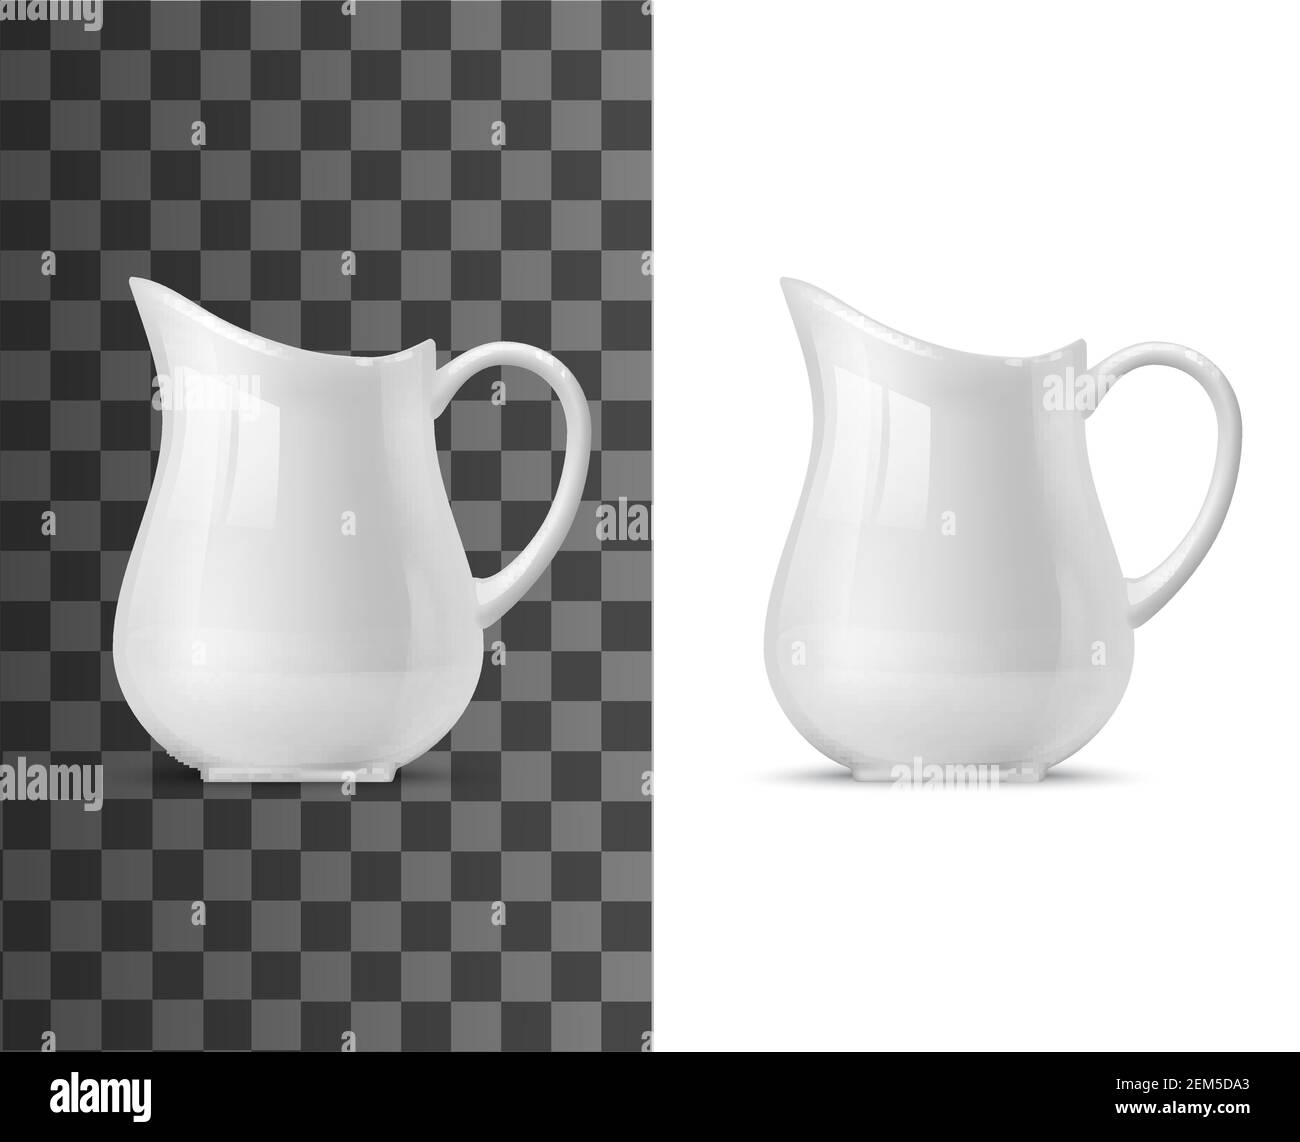 https://c8.alamy.com/comp/2EM5DA3/creamer-or-milk-pot-vector-templates-of-white-ceramic-tableware-3d-porcelain-jug-pitcher-coffee-or-tea-creamer-with-handle-on-transparent-and-white-2EM5DA3.jpg